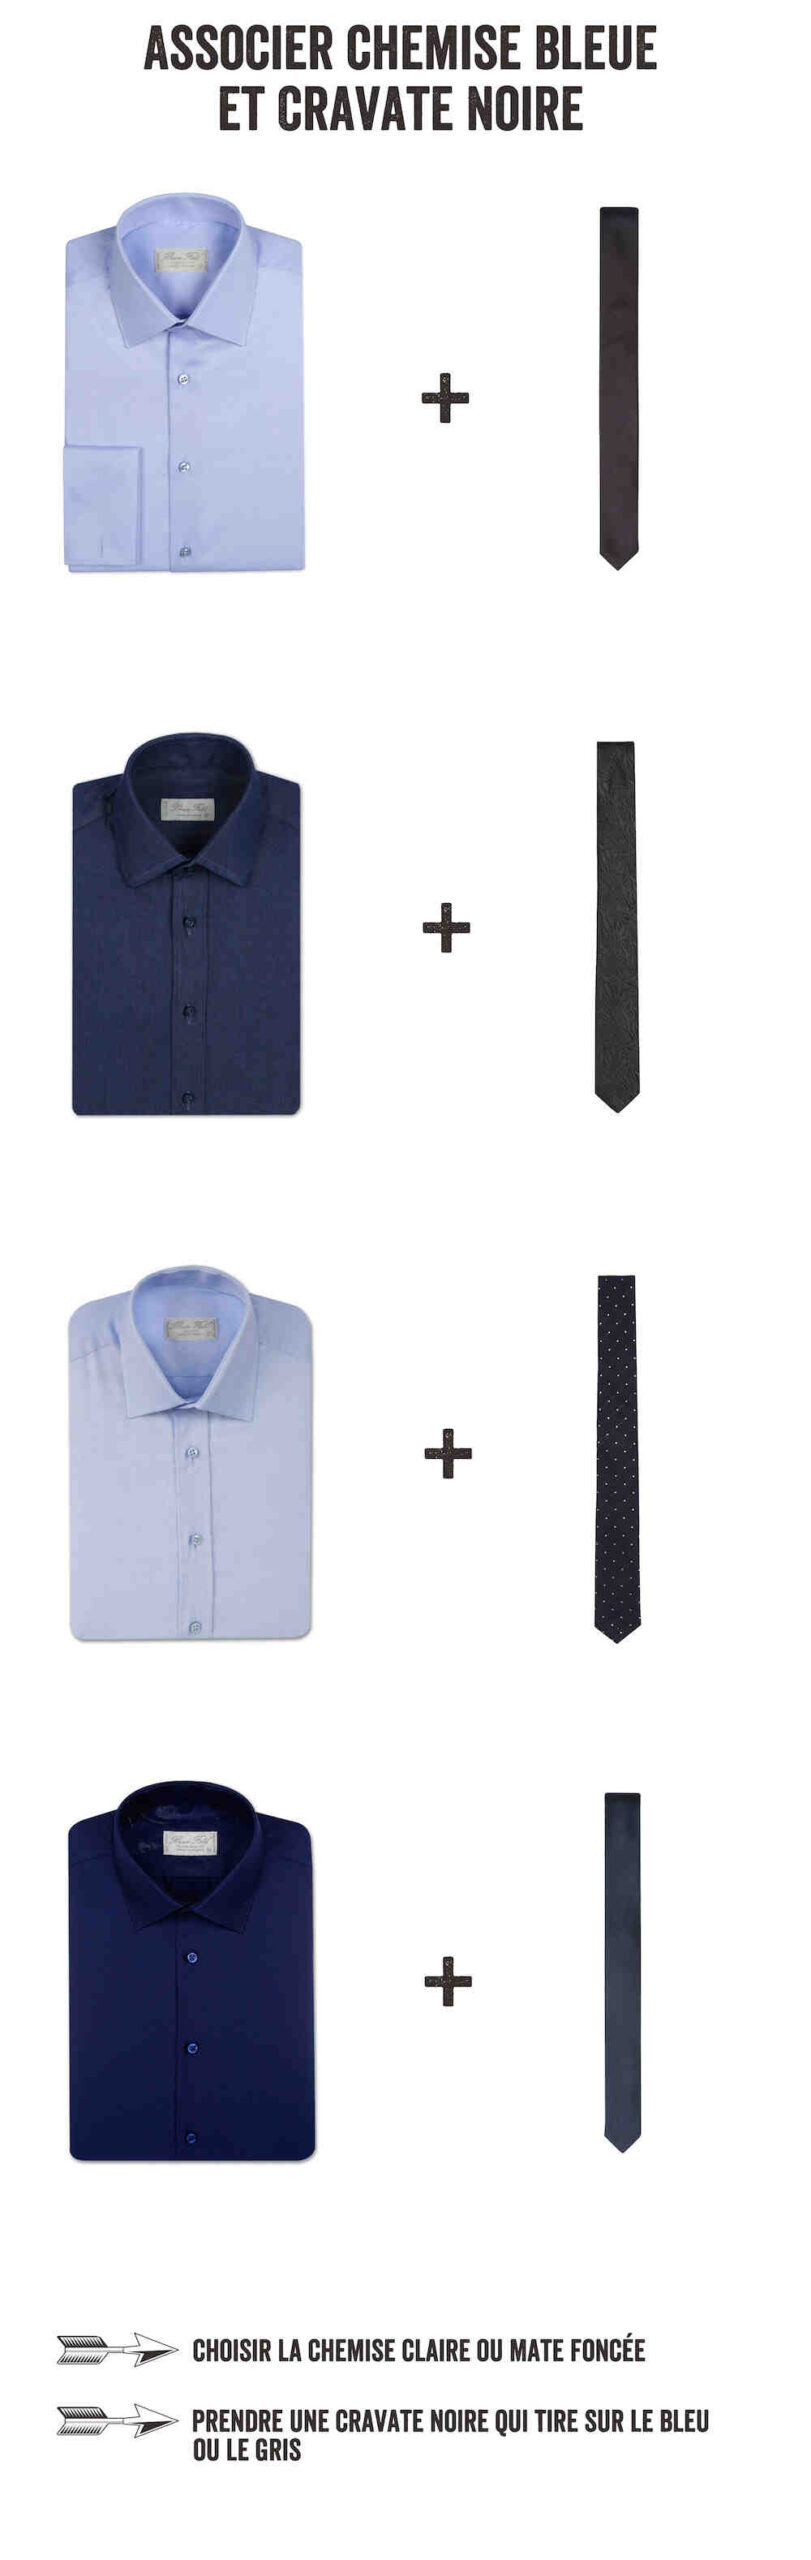 Quel genre de chemise cravate ?